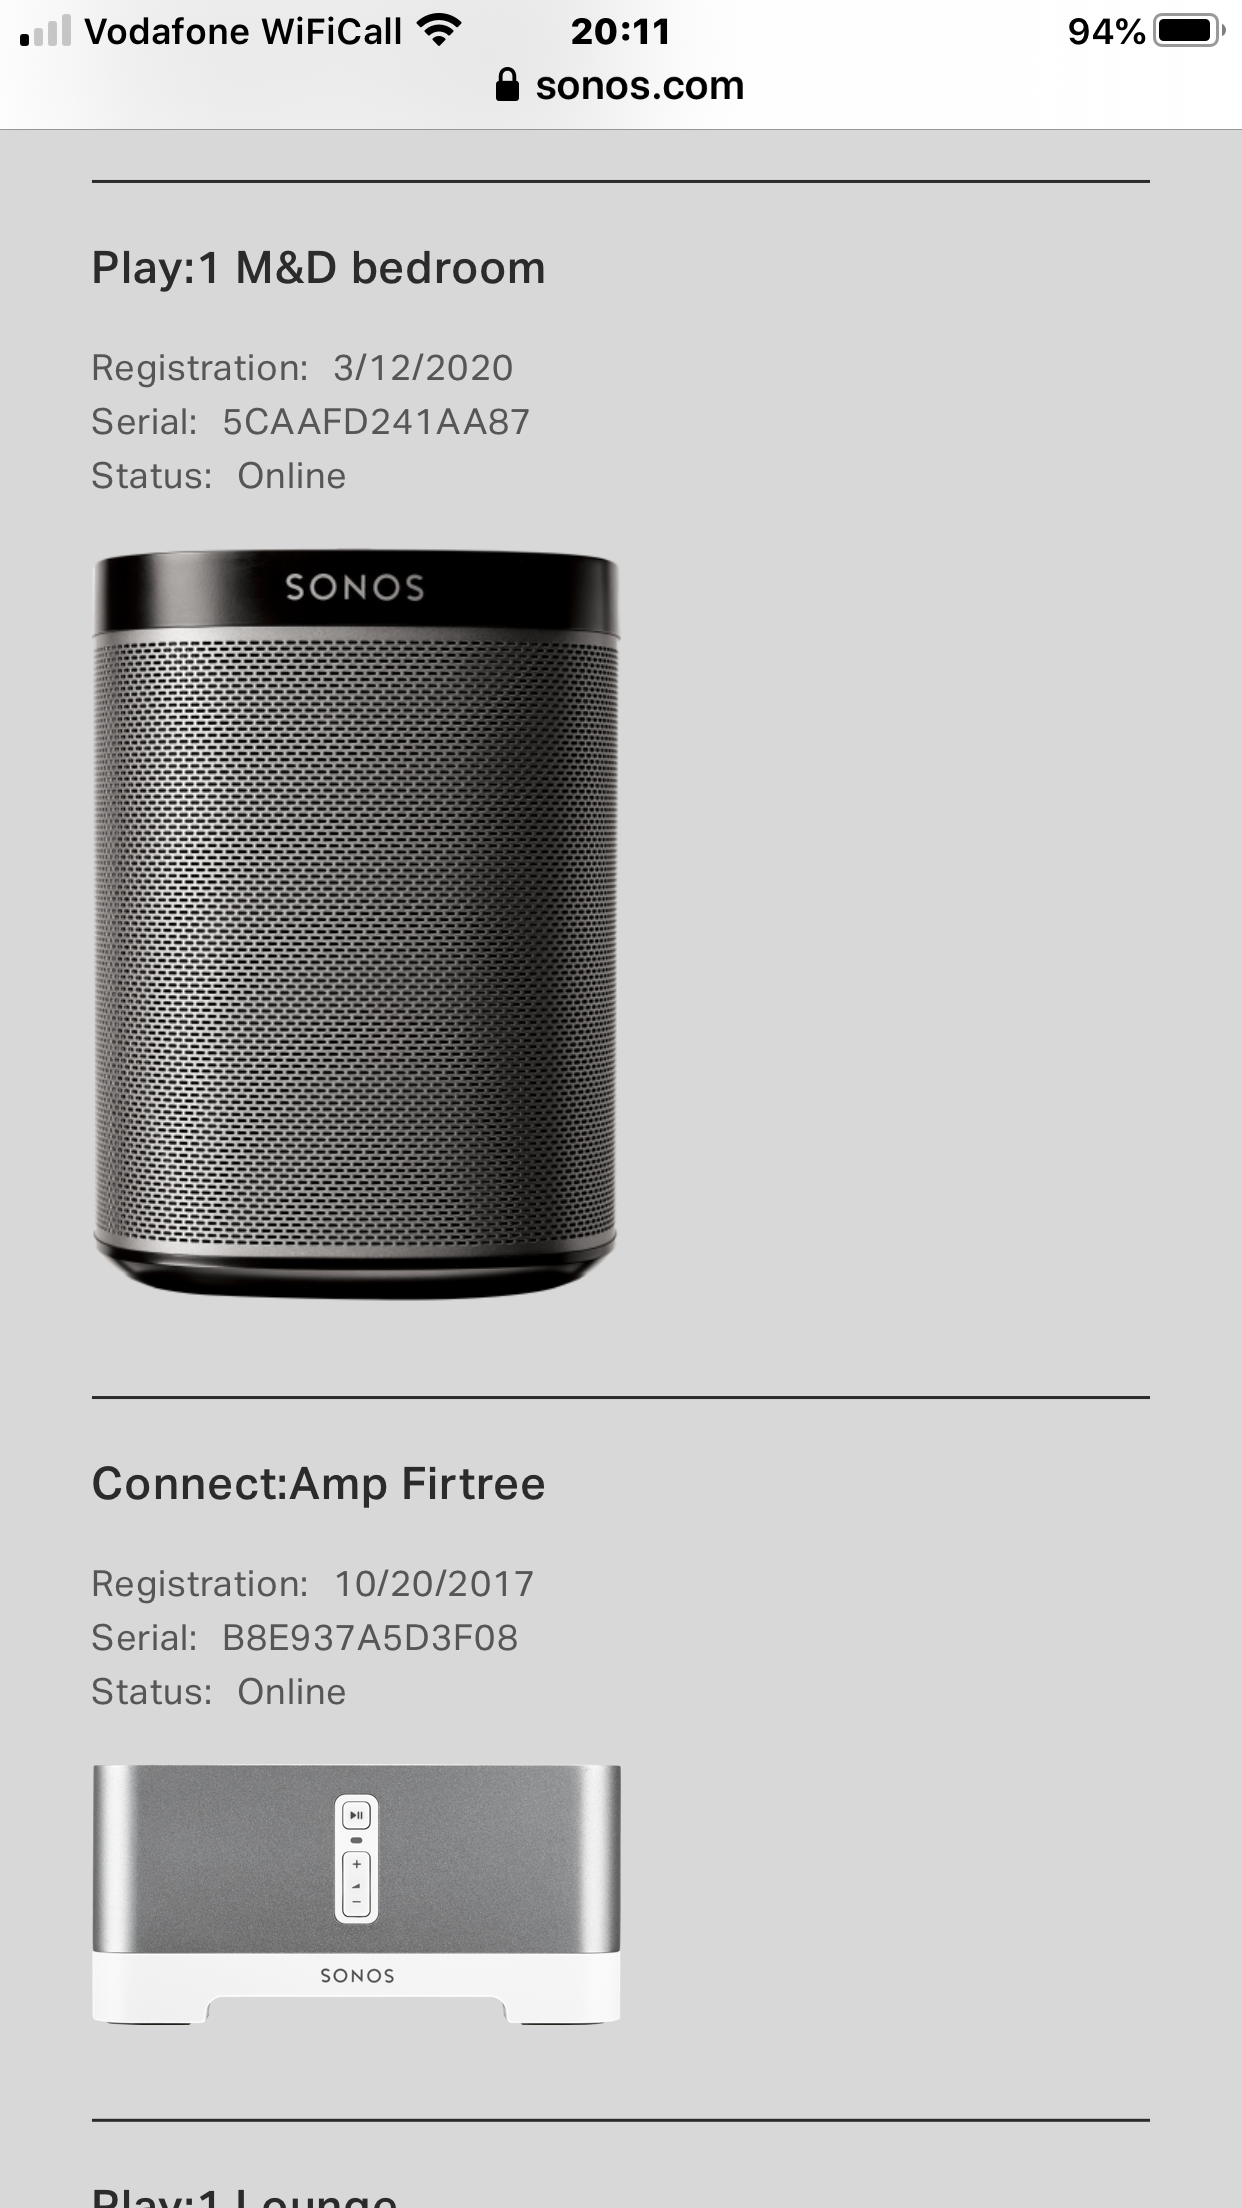 compatible HW version | Sonos Community